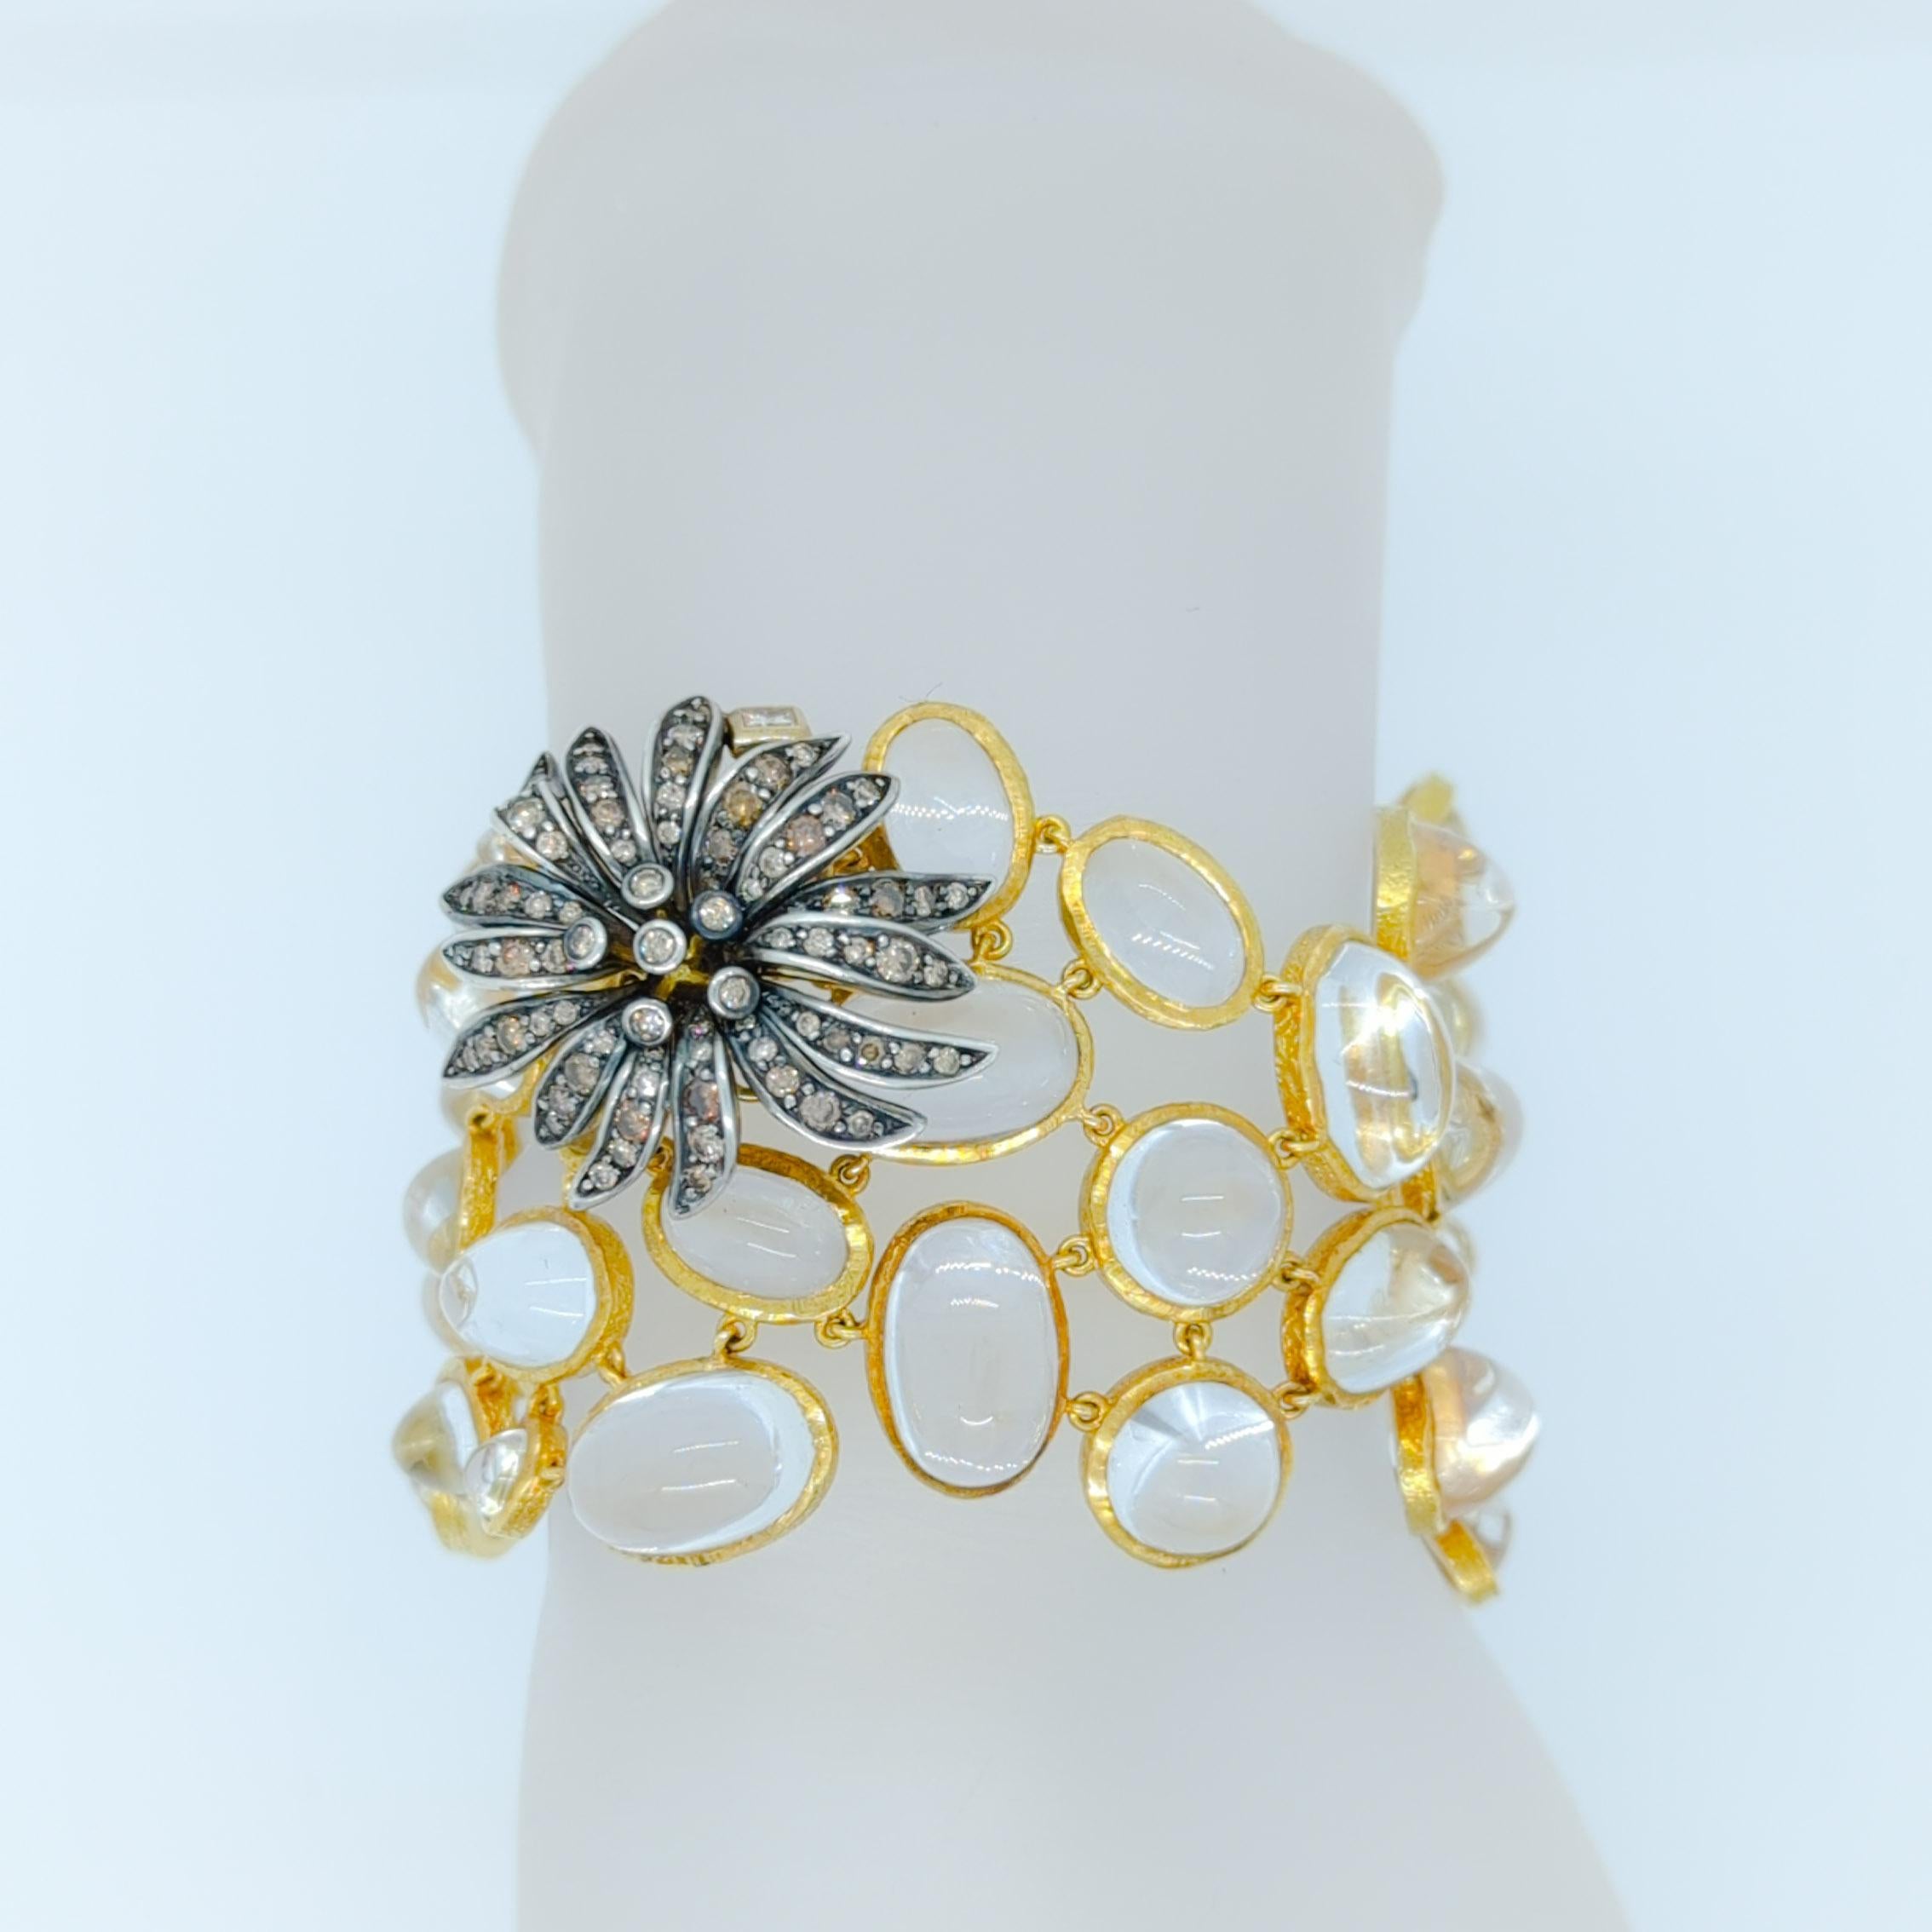 Wunderschönes Armband und Ohrring-Set von H. Stern mit Kristall-Cabochons und runden Diamanten von guter Qualität.  Handgefertigt in 18k Gelbgold.